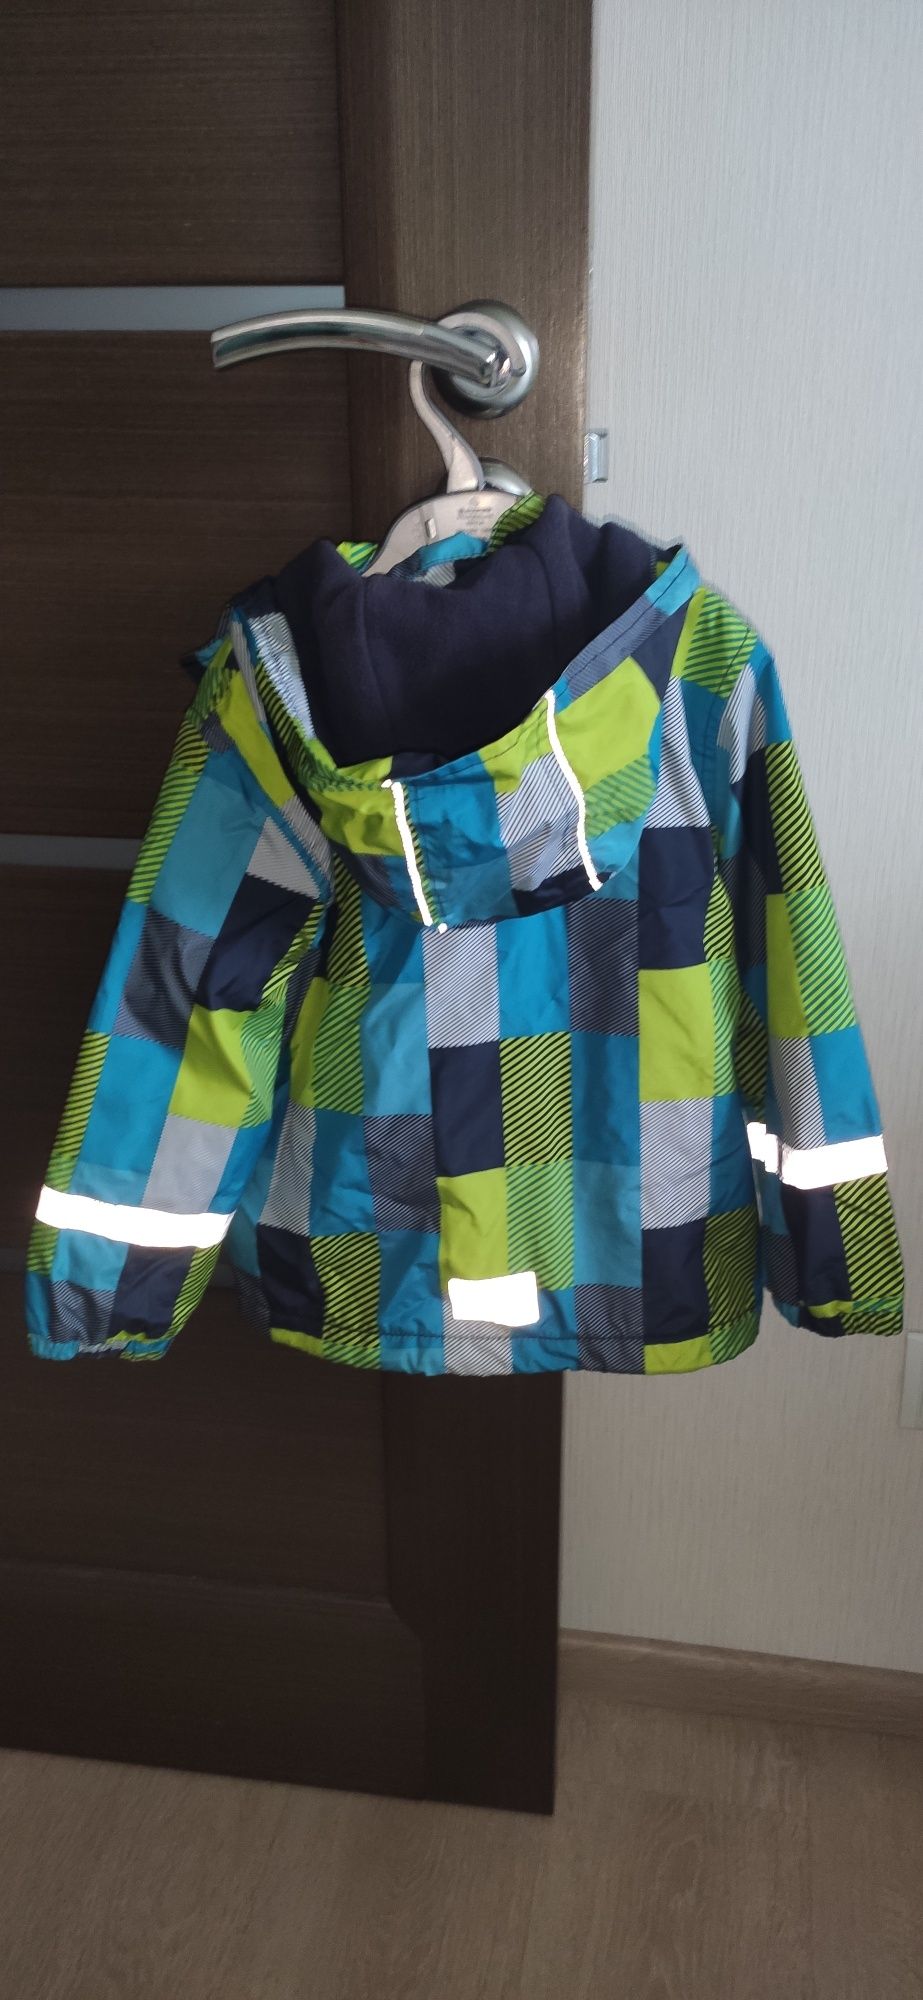 Куртка демісезонна Тополіно Topomini для хлопчика 104-110